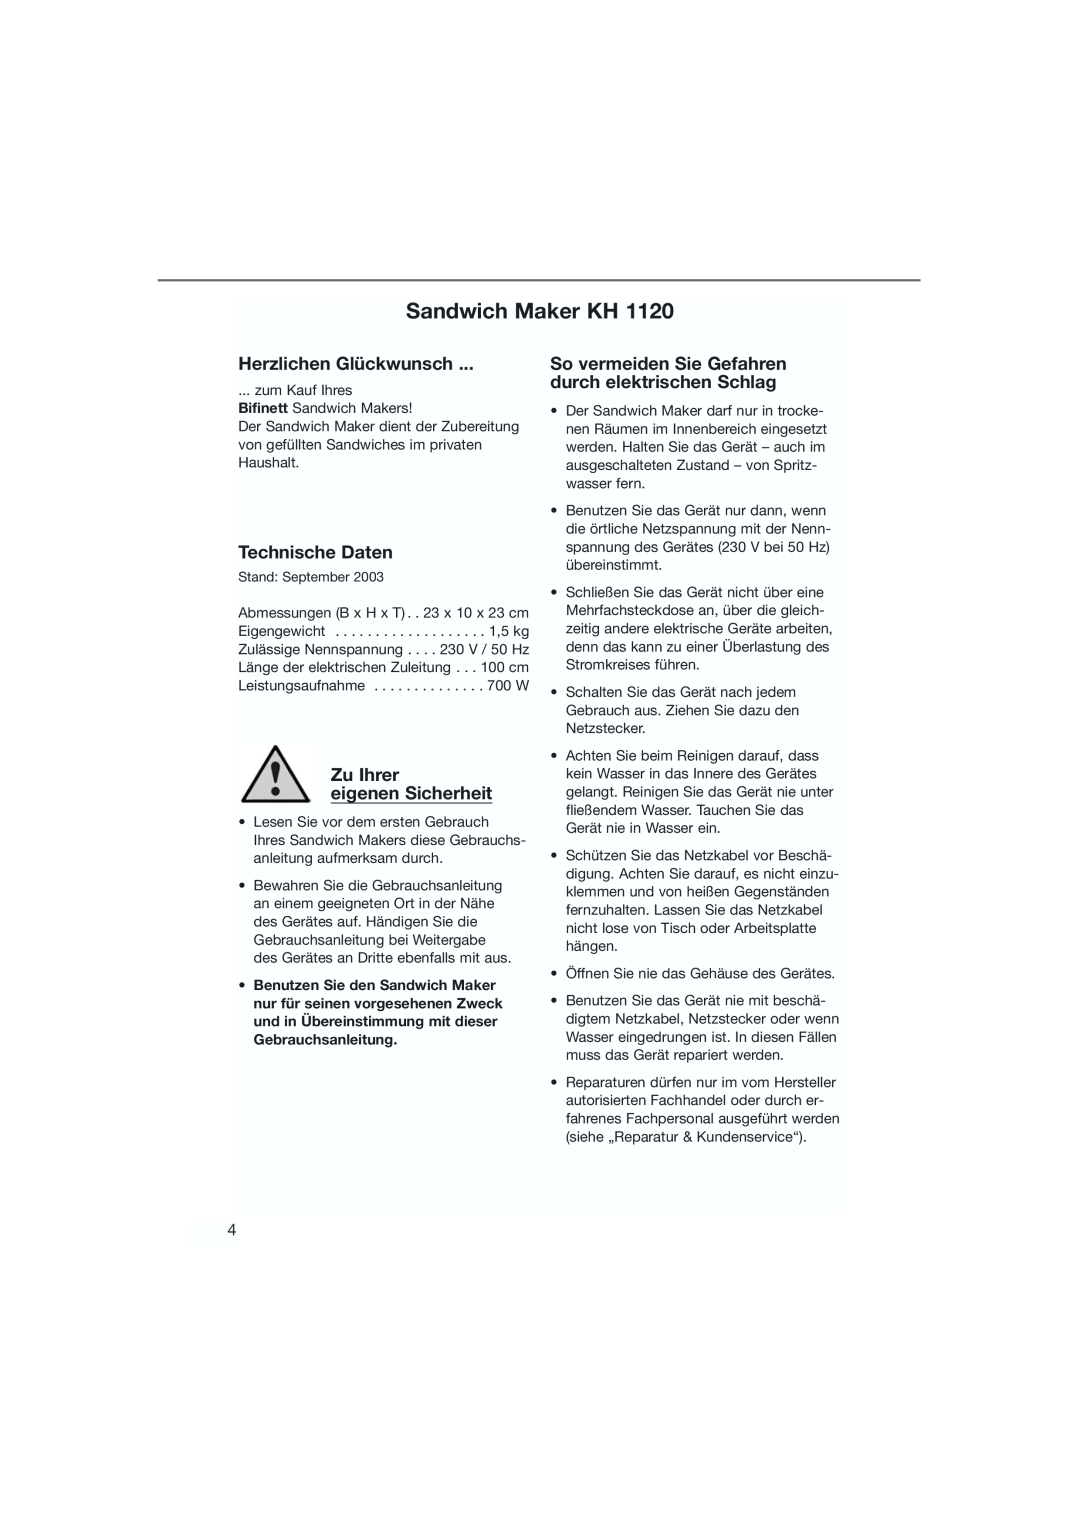 Bifinett KH 1120 manual Sandwich Maker KH, Herzlichen Glückwunsch, Technische Daten, Zu Ihrer eigenen Sicherheit 